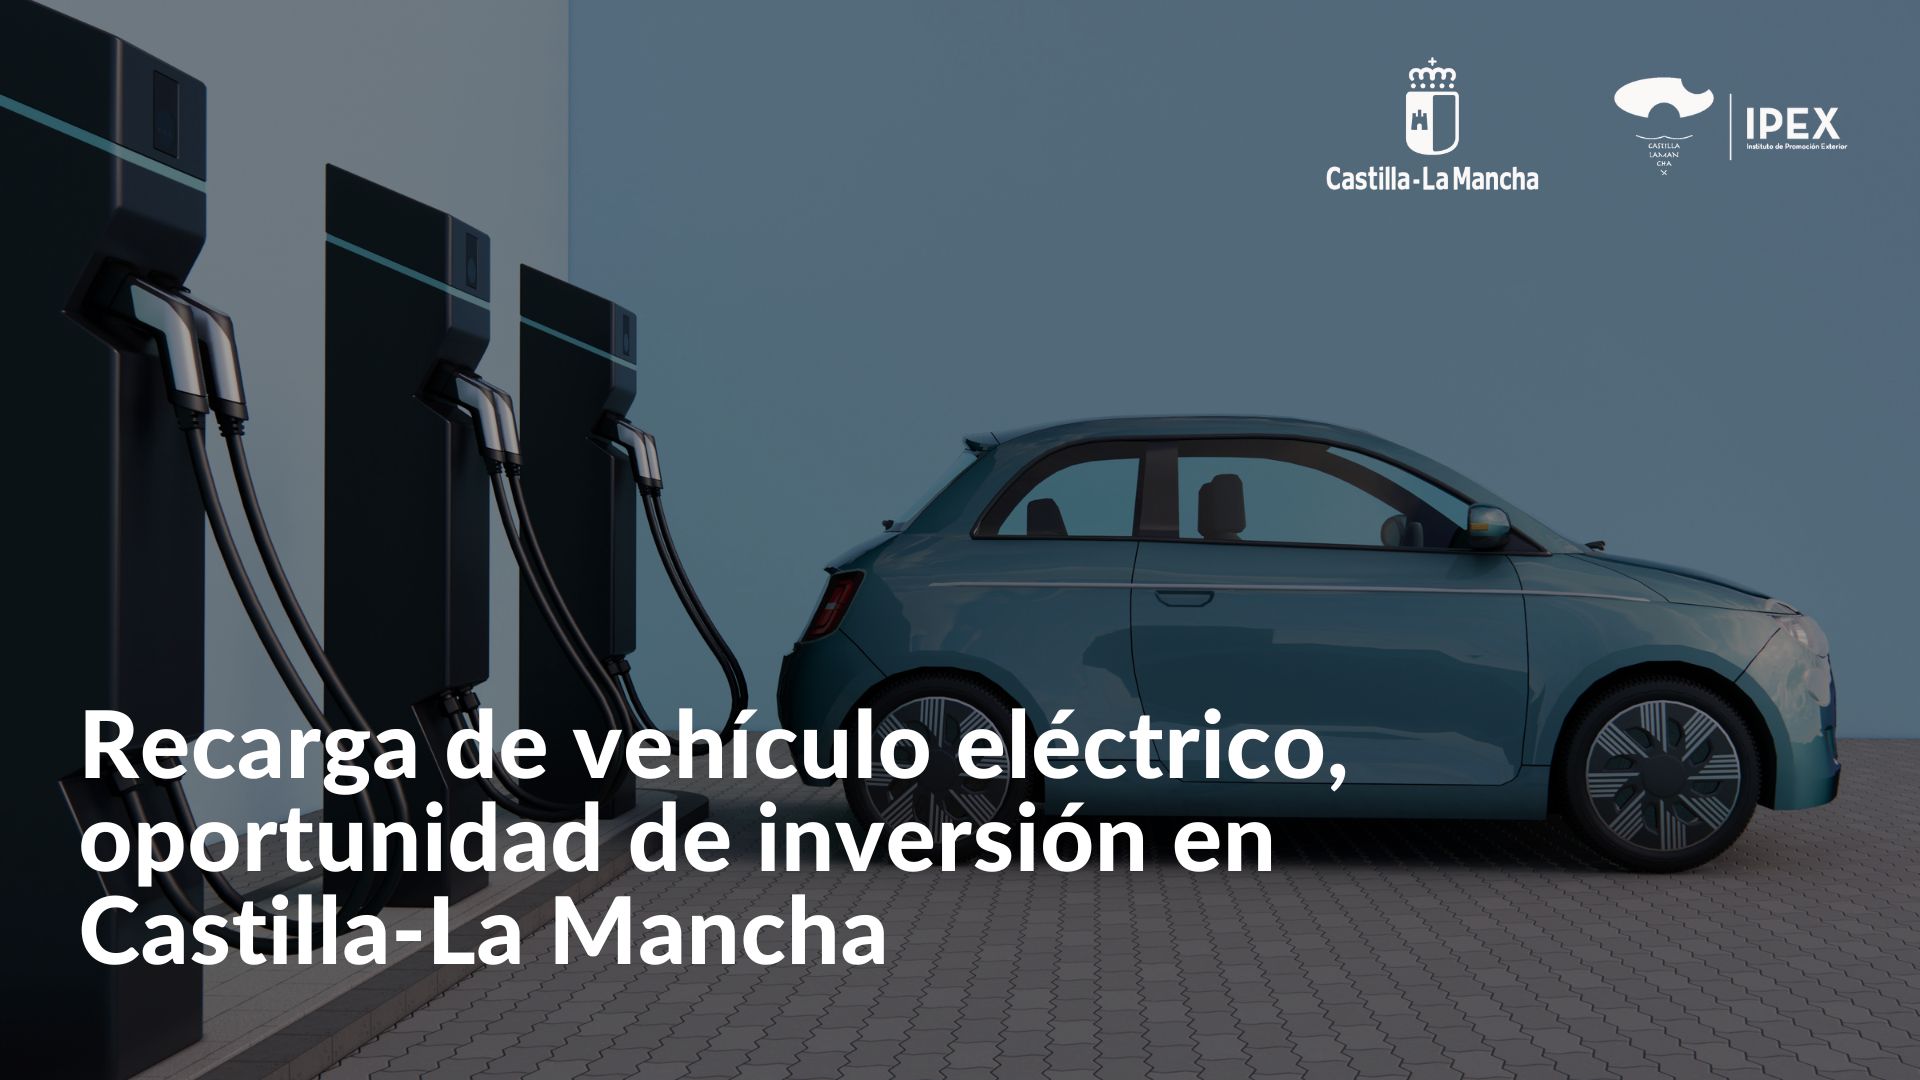 Recarga de vehículo eléctrico, oportunidad de inversión en Castilla-La Mancha